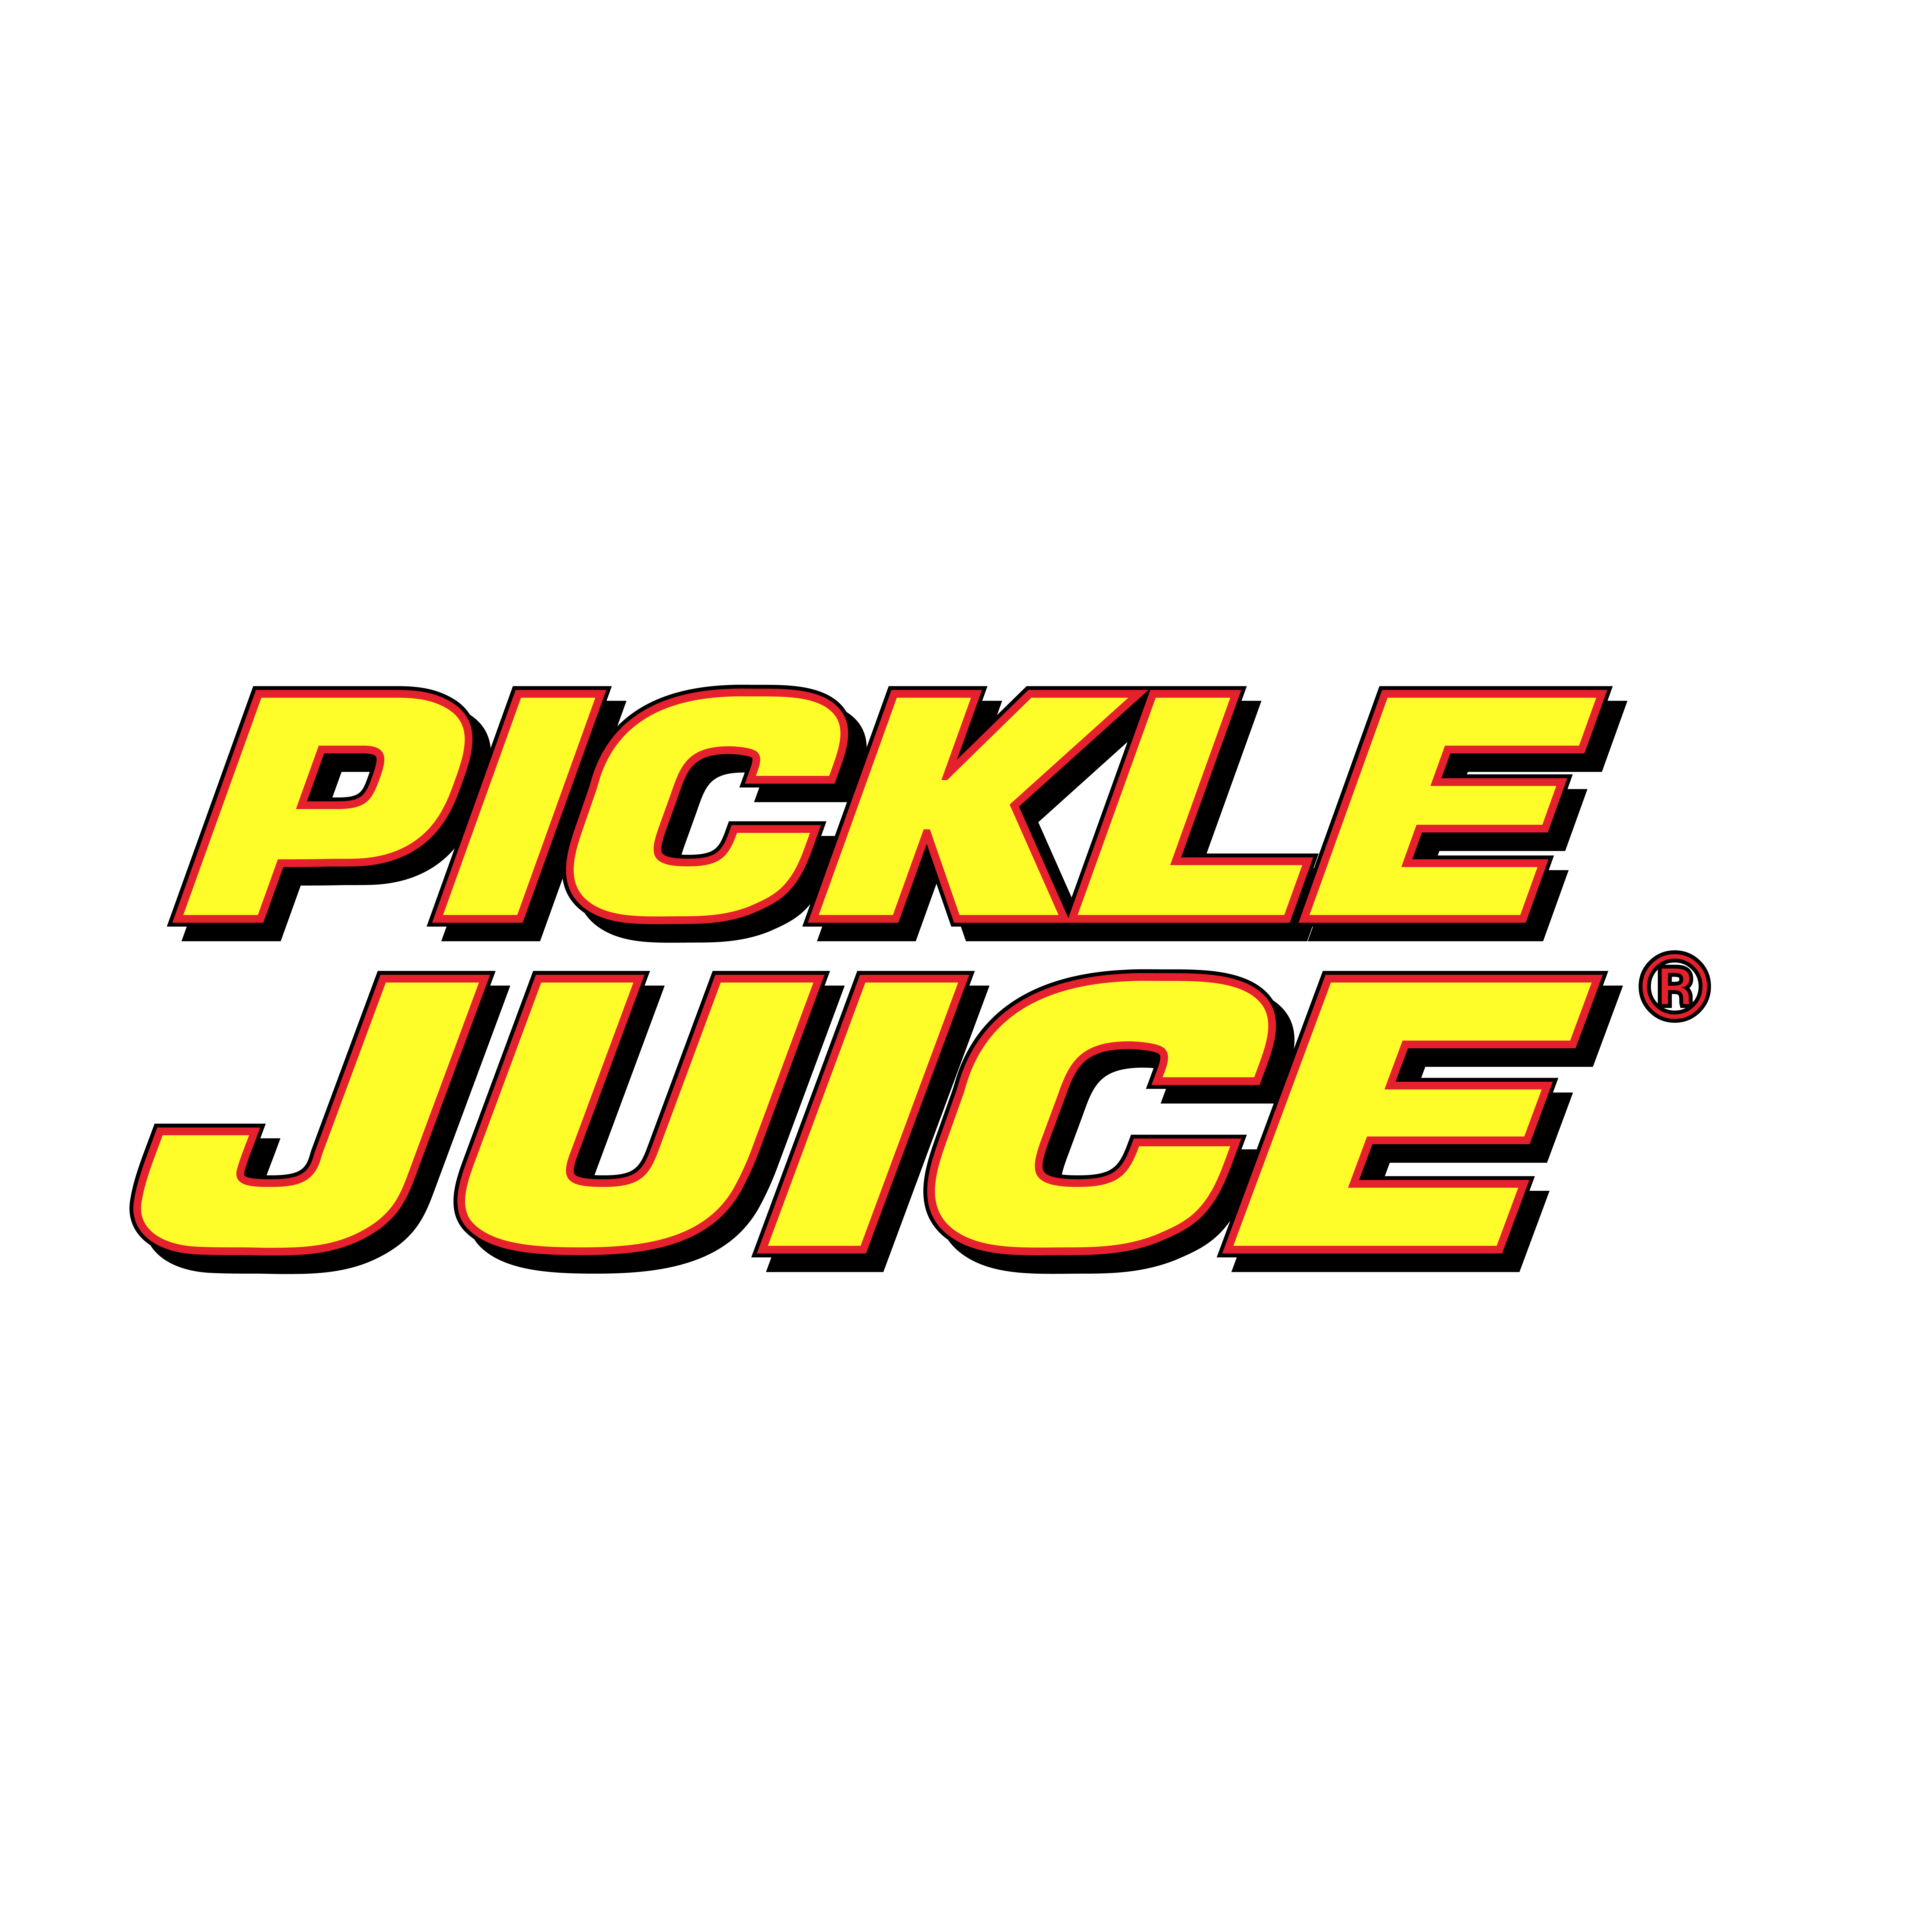 picklepower